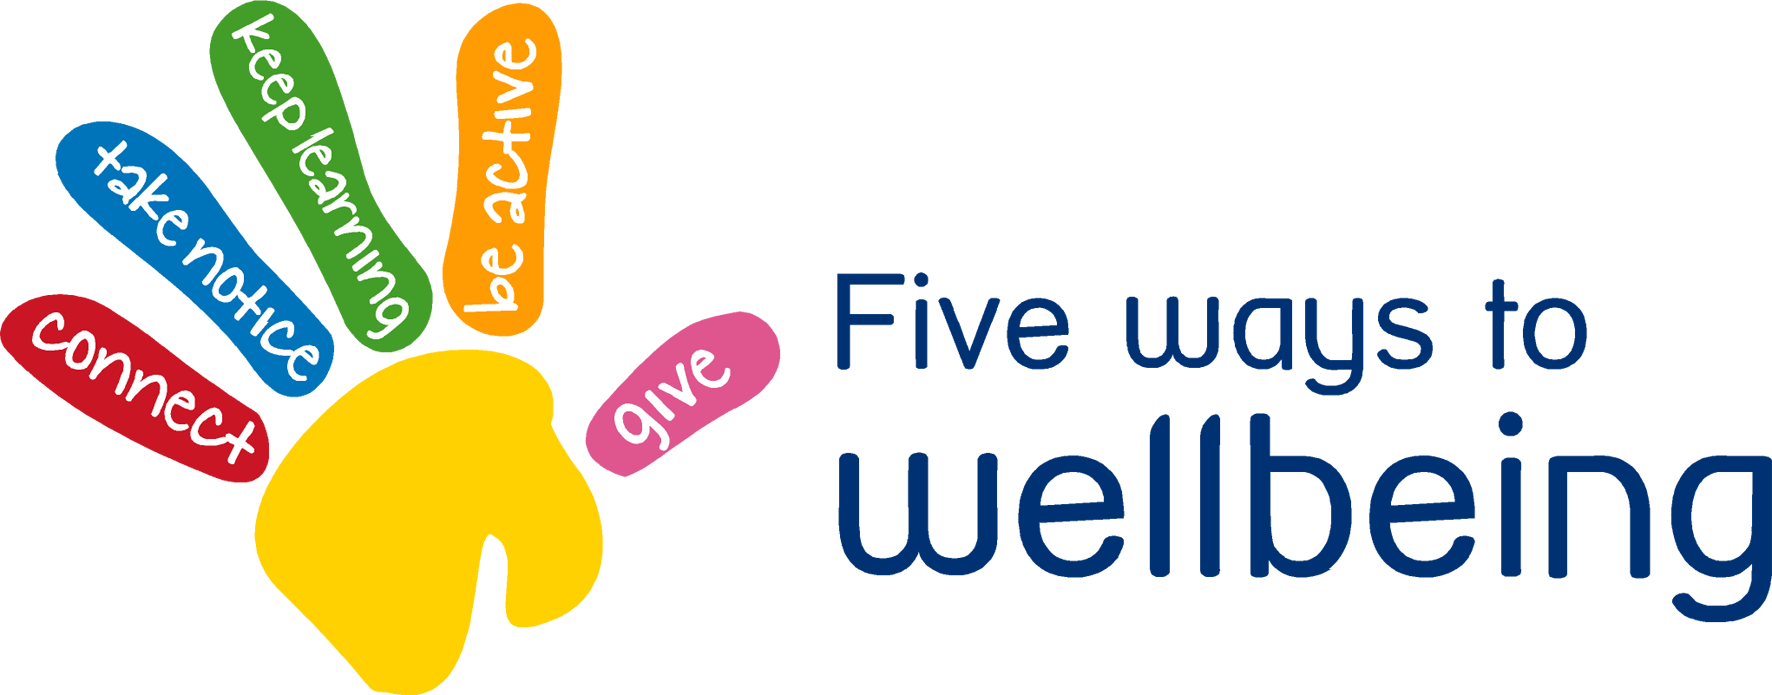 Community Website In Conjunction With Avon Dassett - Five Ways To Wellbeing (1772x695)